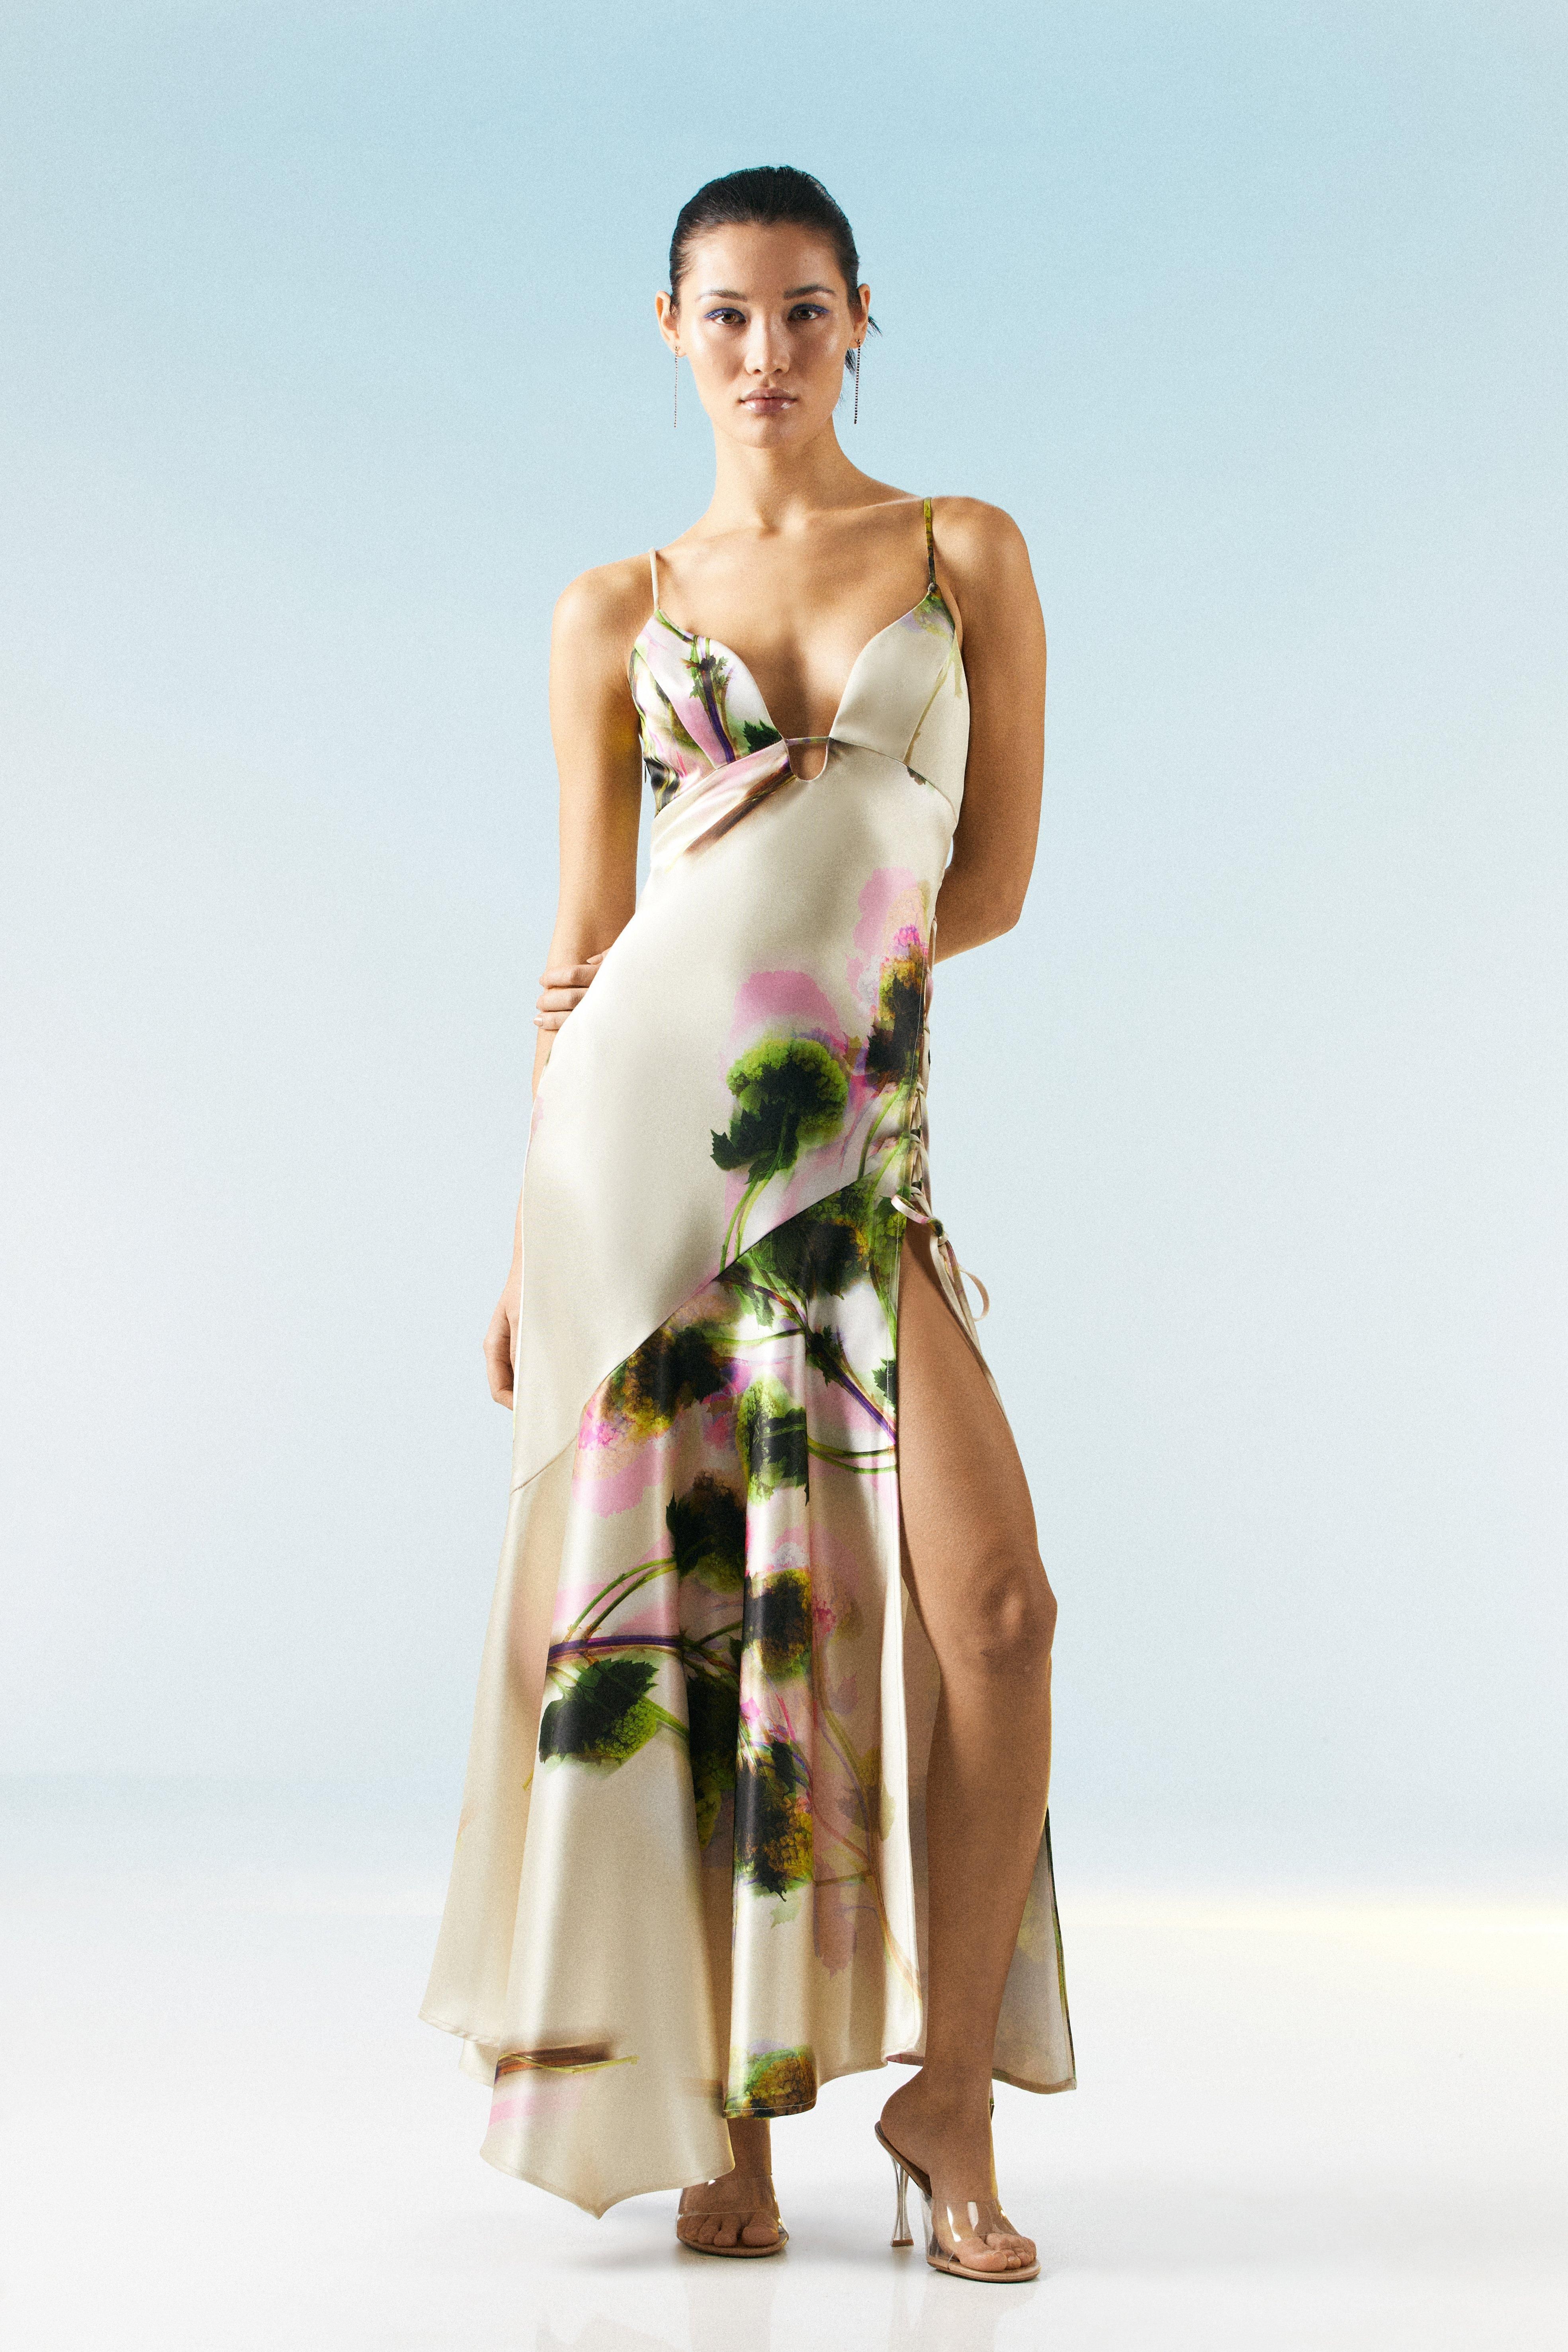 OOTO LONDON Floral Satin Strappy Lace Up Maxi Dress | Karen Millen UK + IE + DE + NL